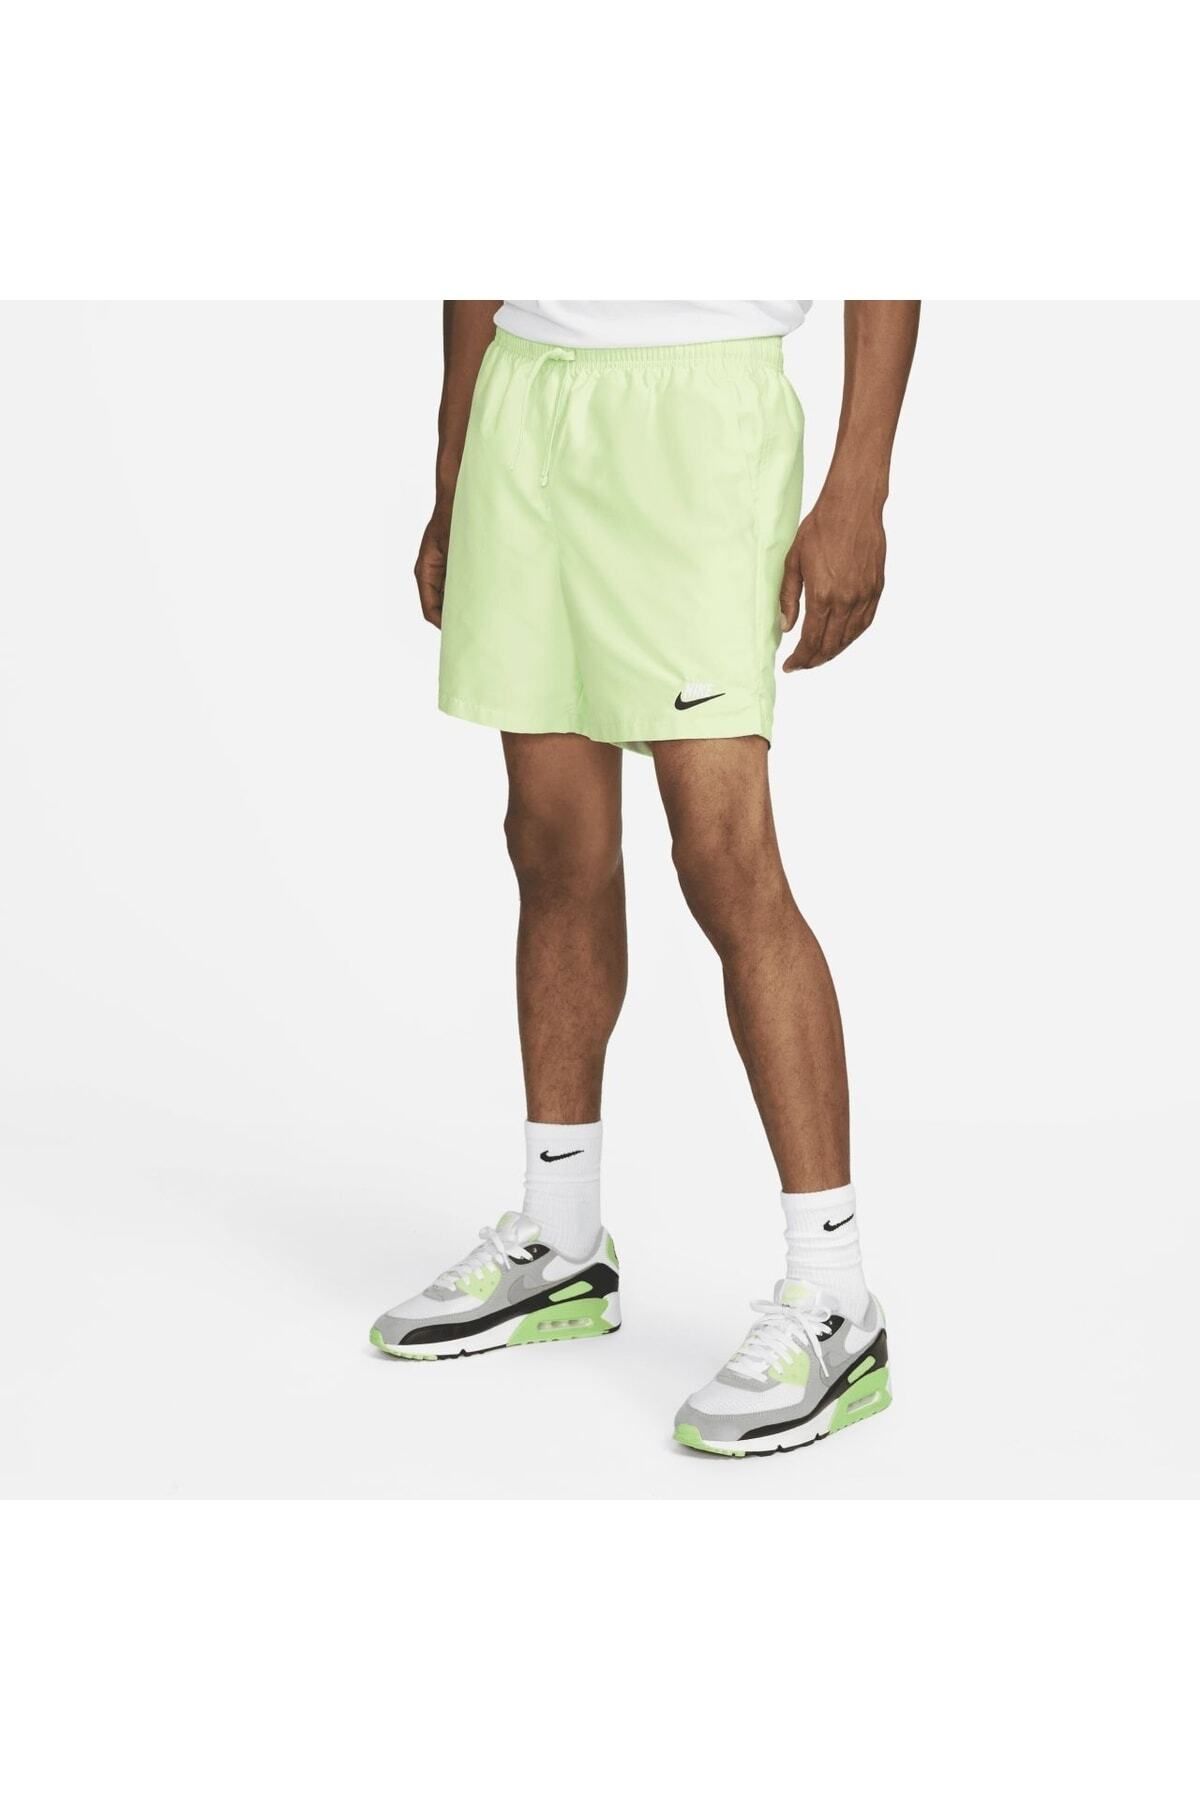 Nike Wvn Flow Short Sn99 - Green